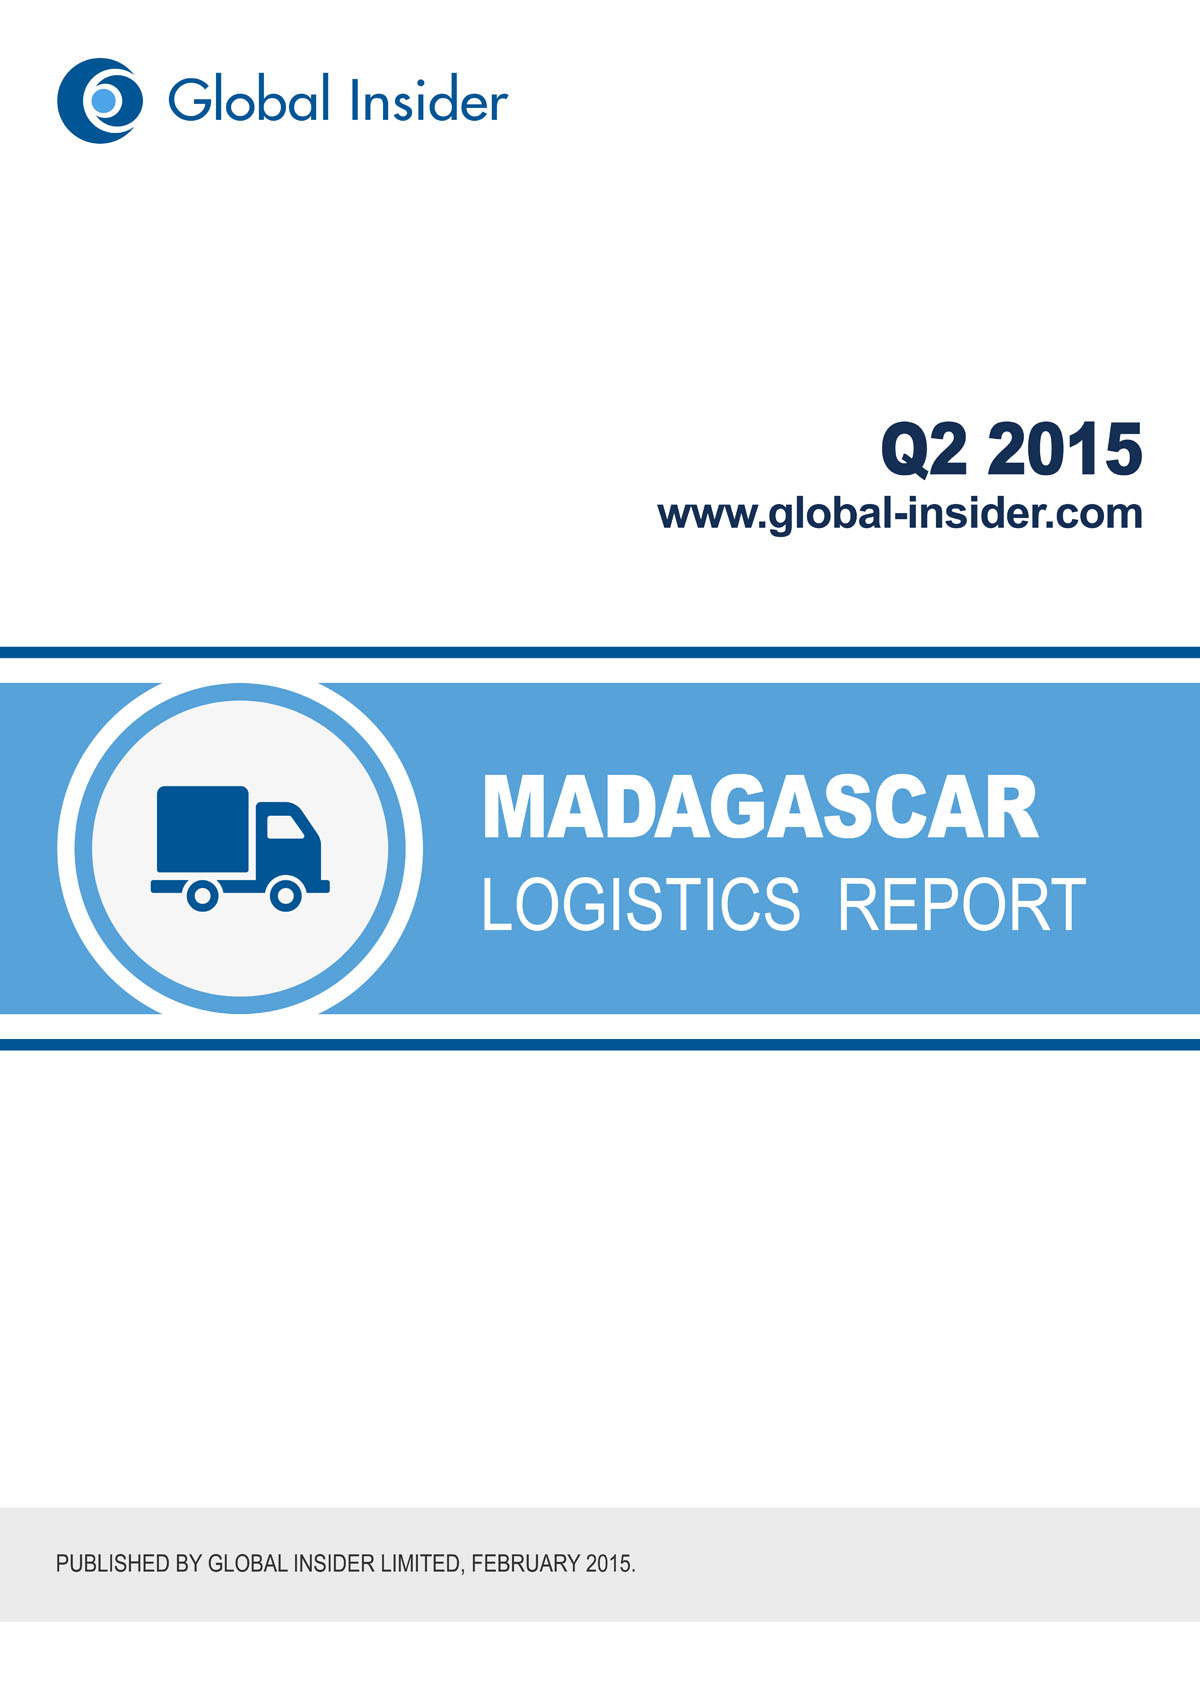 Madagascar Logistics Report